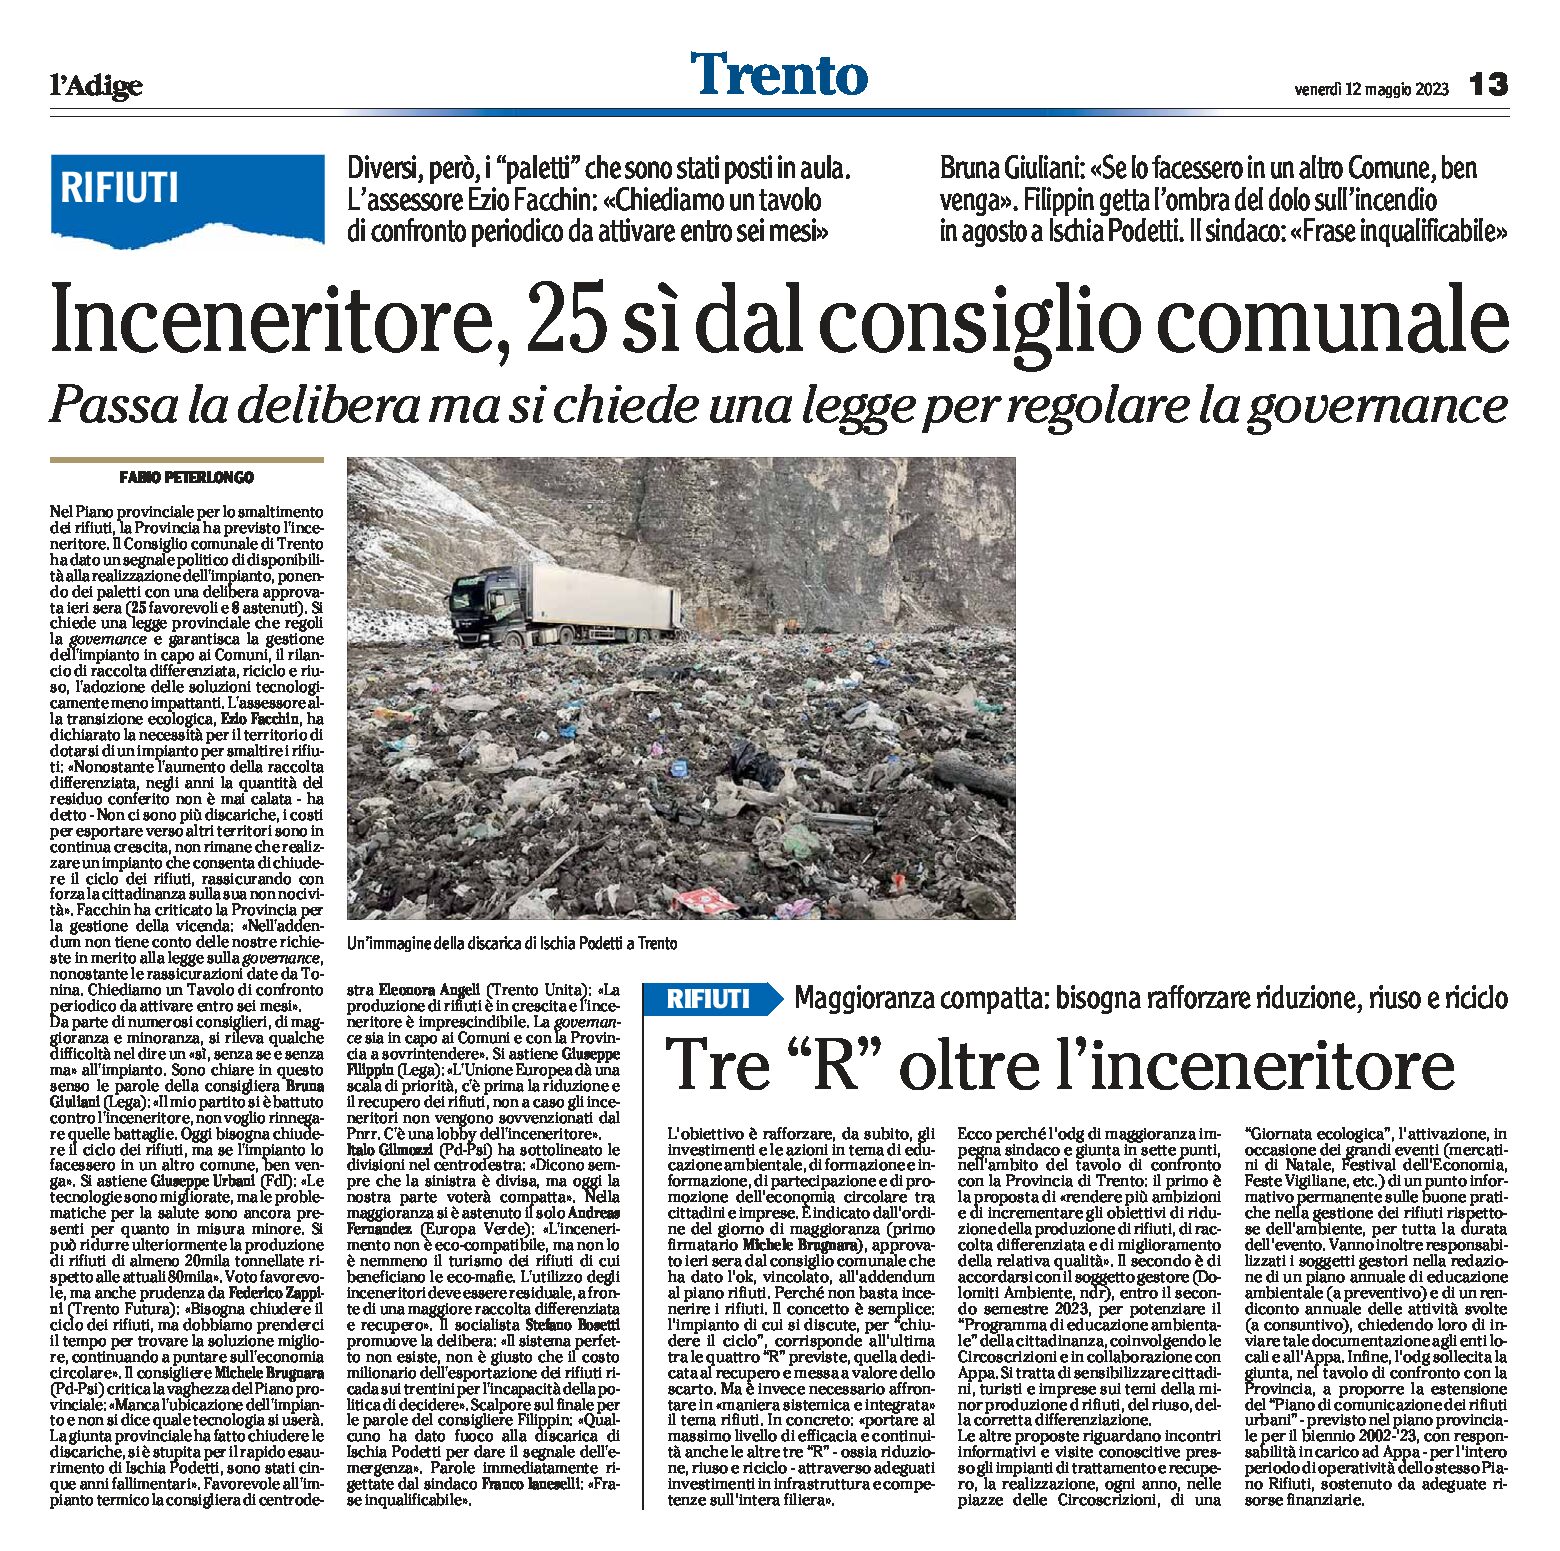 Trento, inceneritore: 25 sì dal consiglio comunale